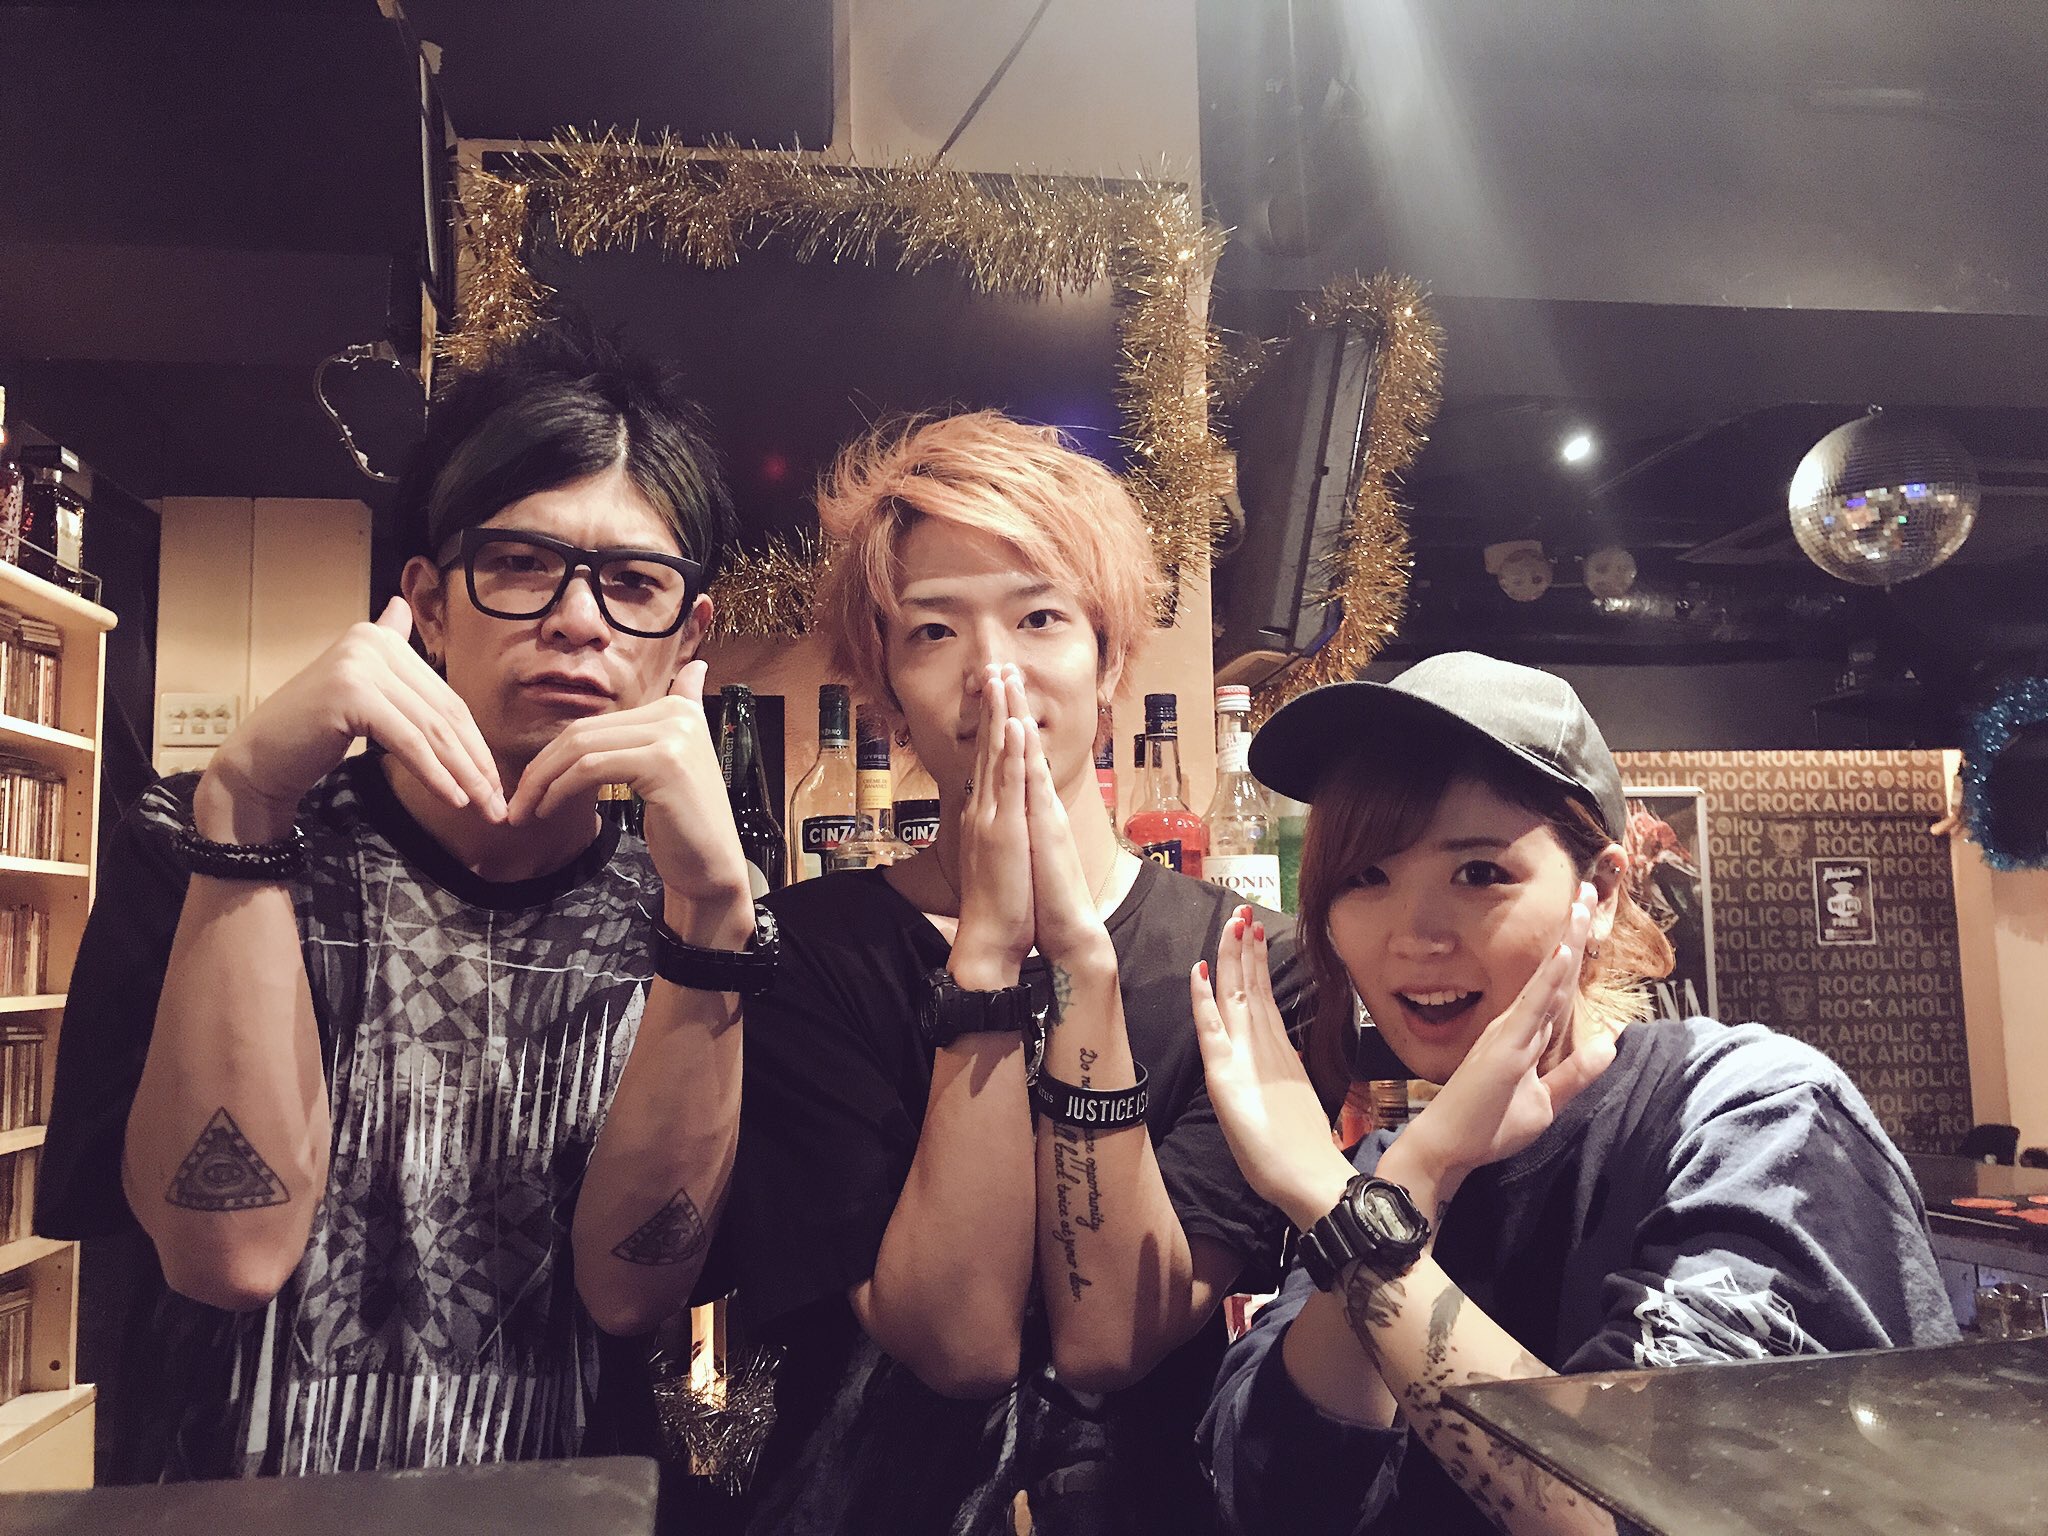 http://bar-rockaholic.jp/shibuya/blog/IMG_1566.JPG